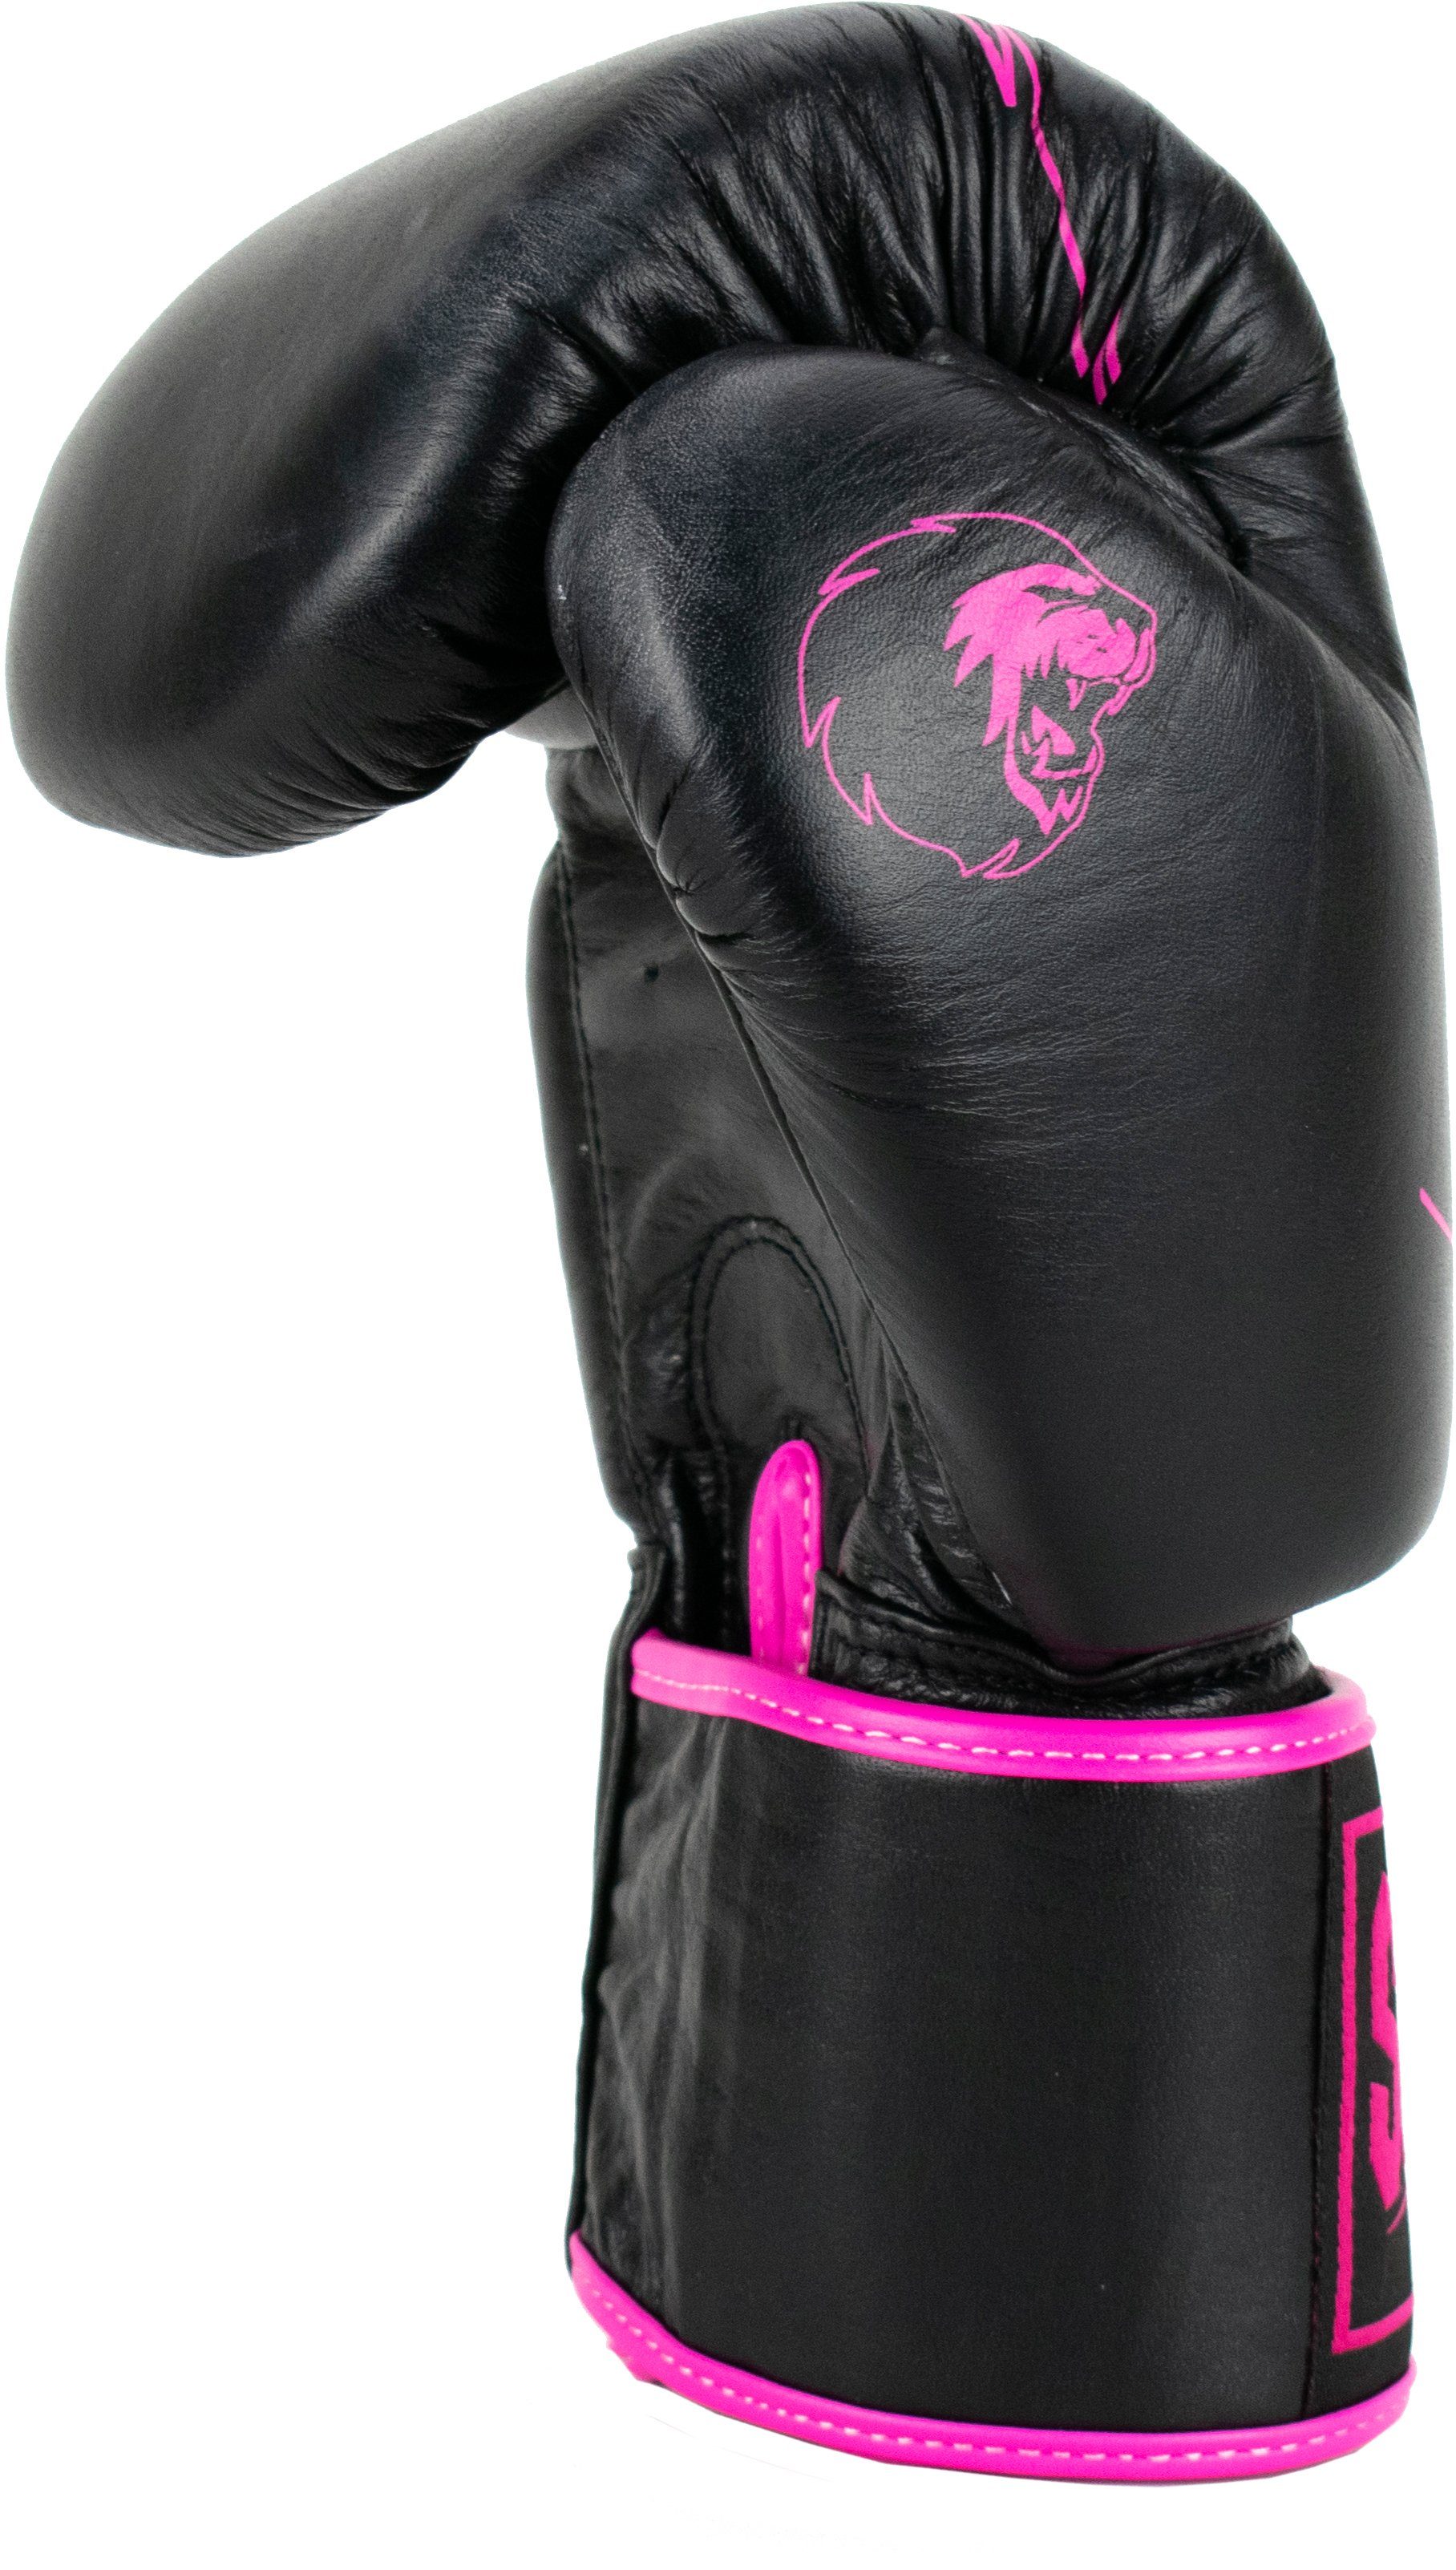 Pro Boxhandschuhe Super pink/schwarz Warrior